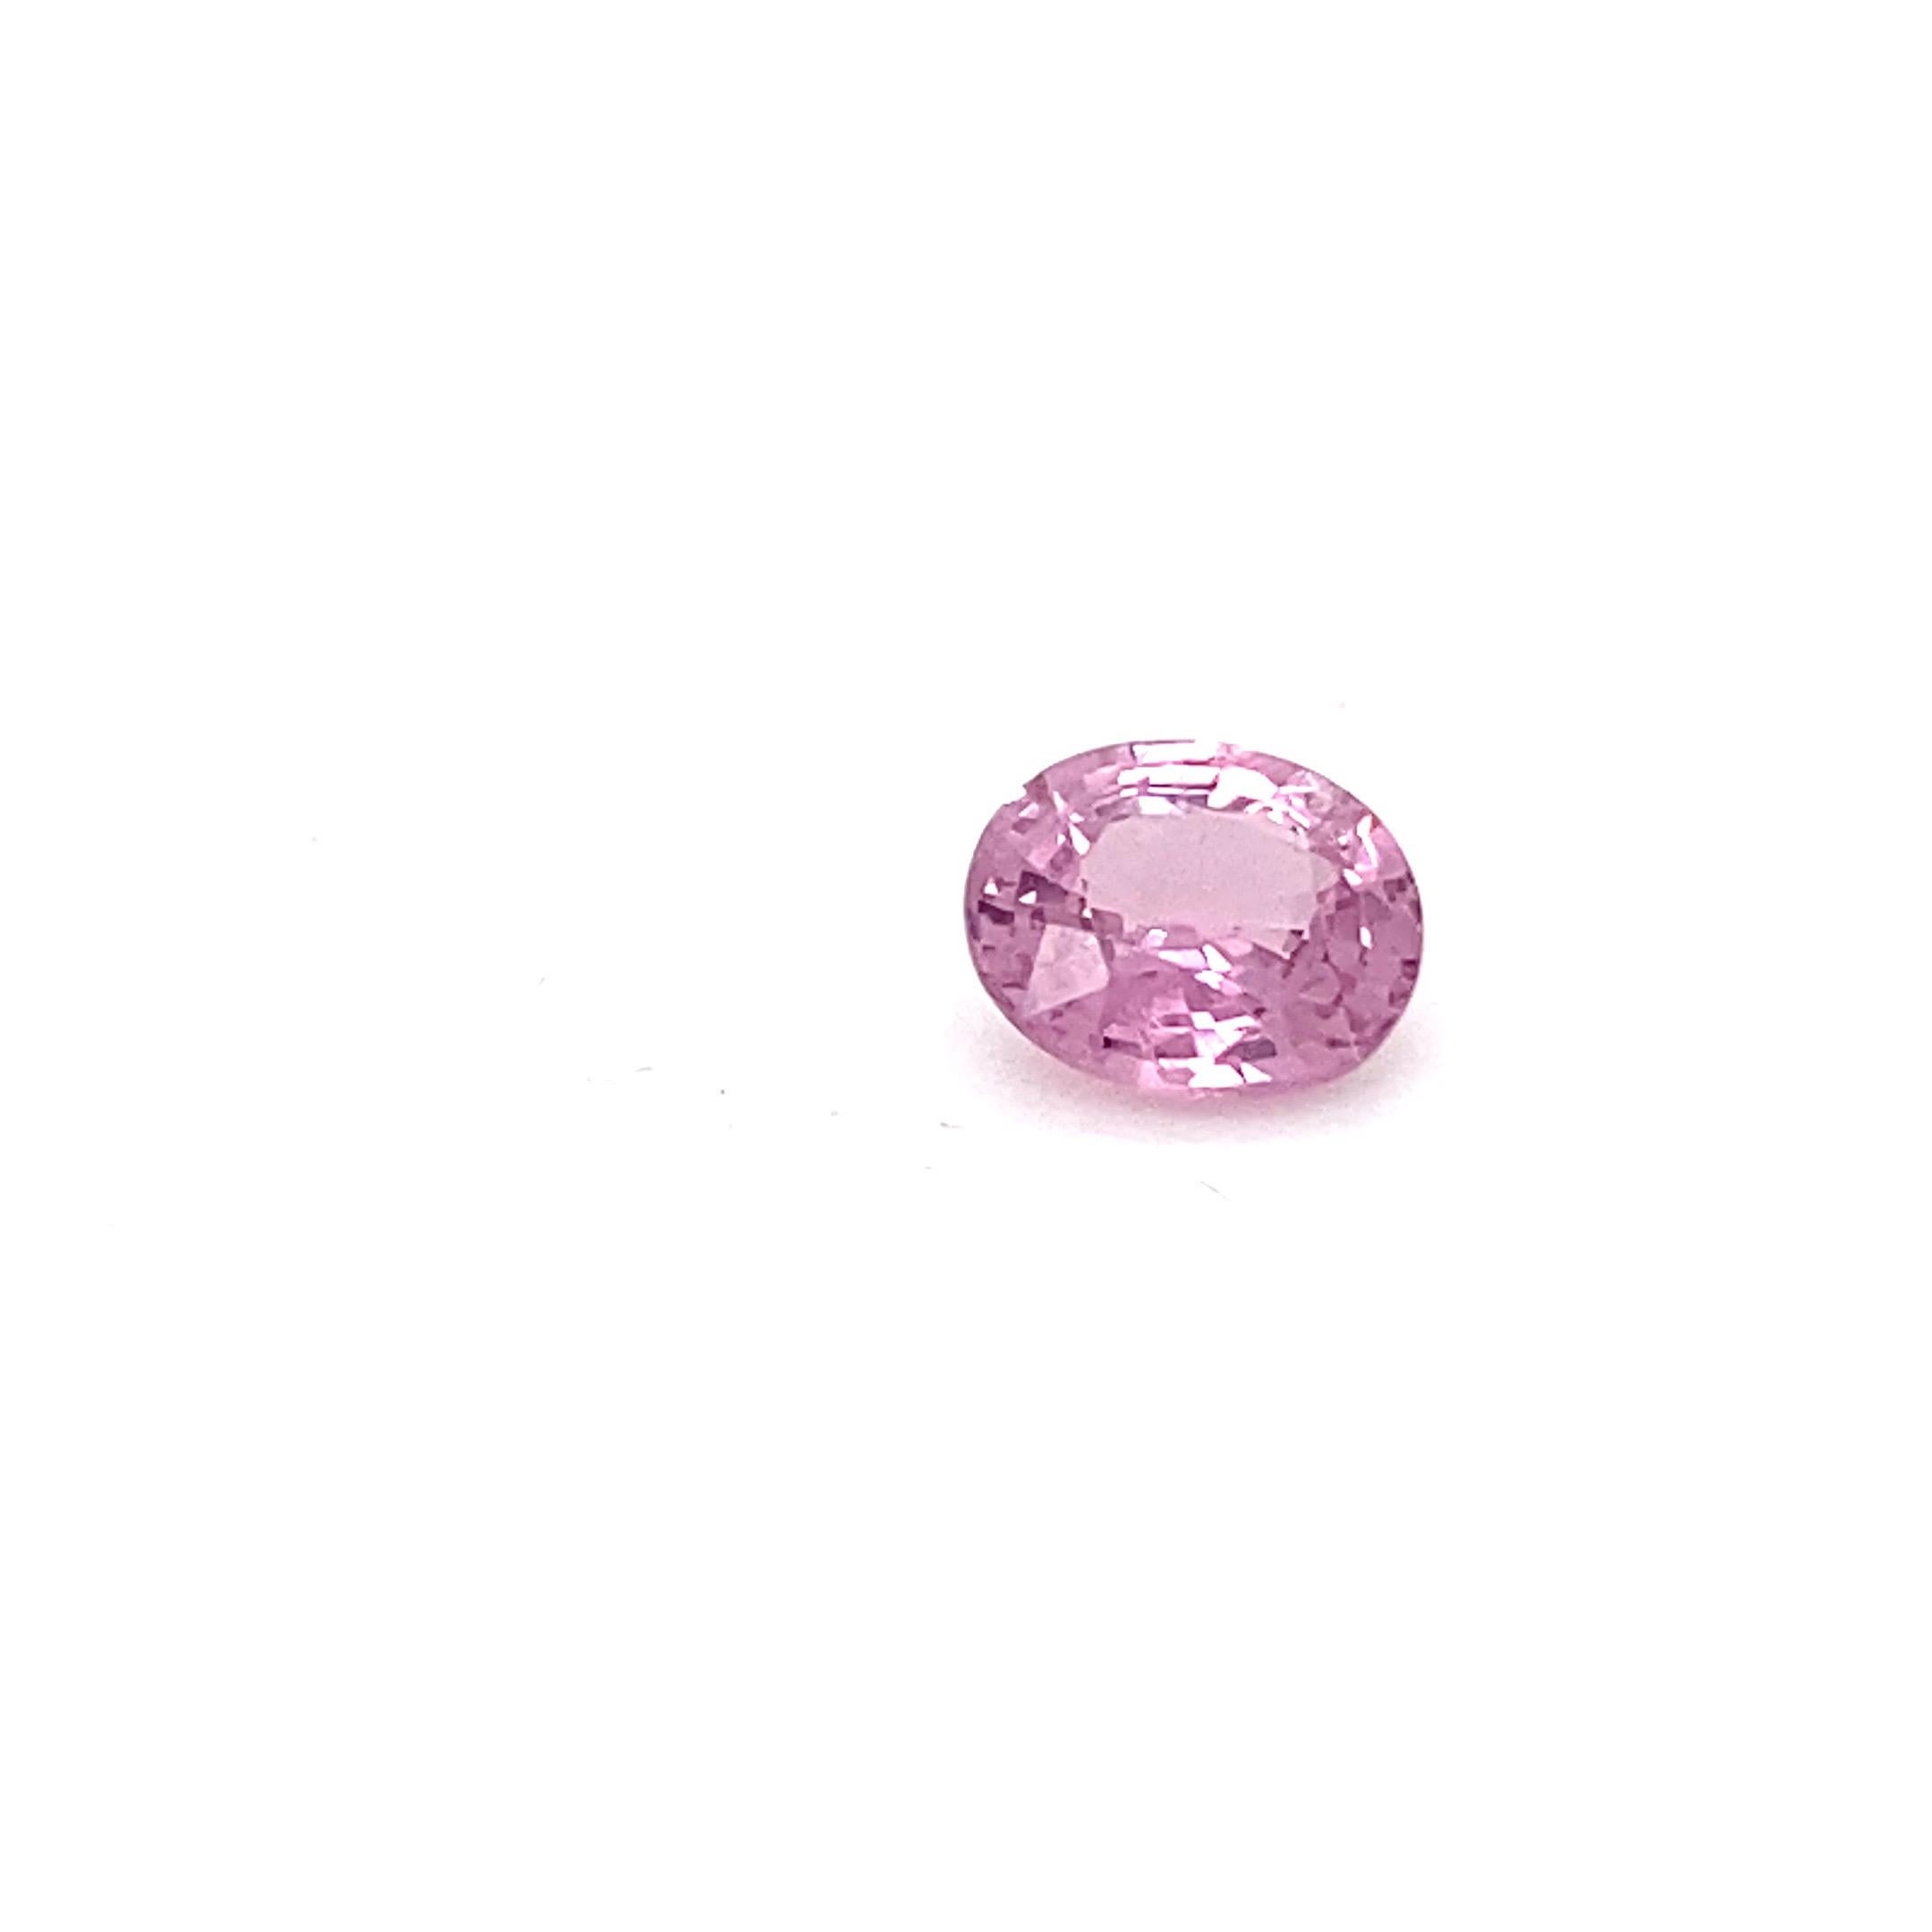 2.0 Carat Oval Shape Natural Pink Spinel Loose Gemstone For Sale 6